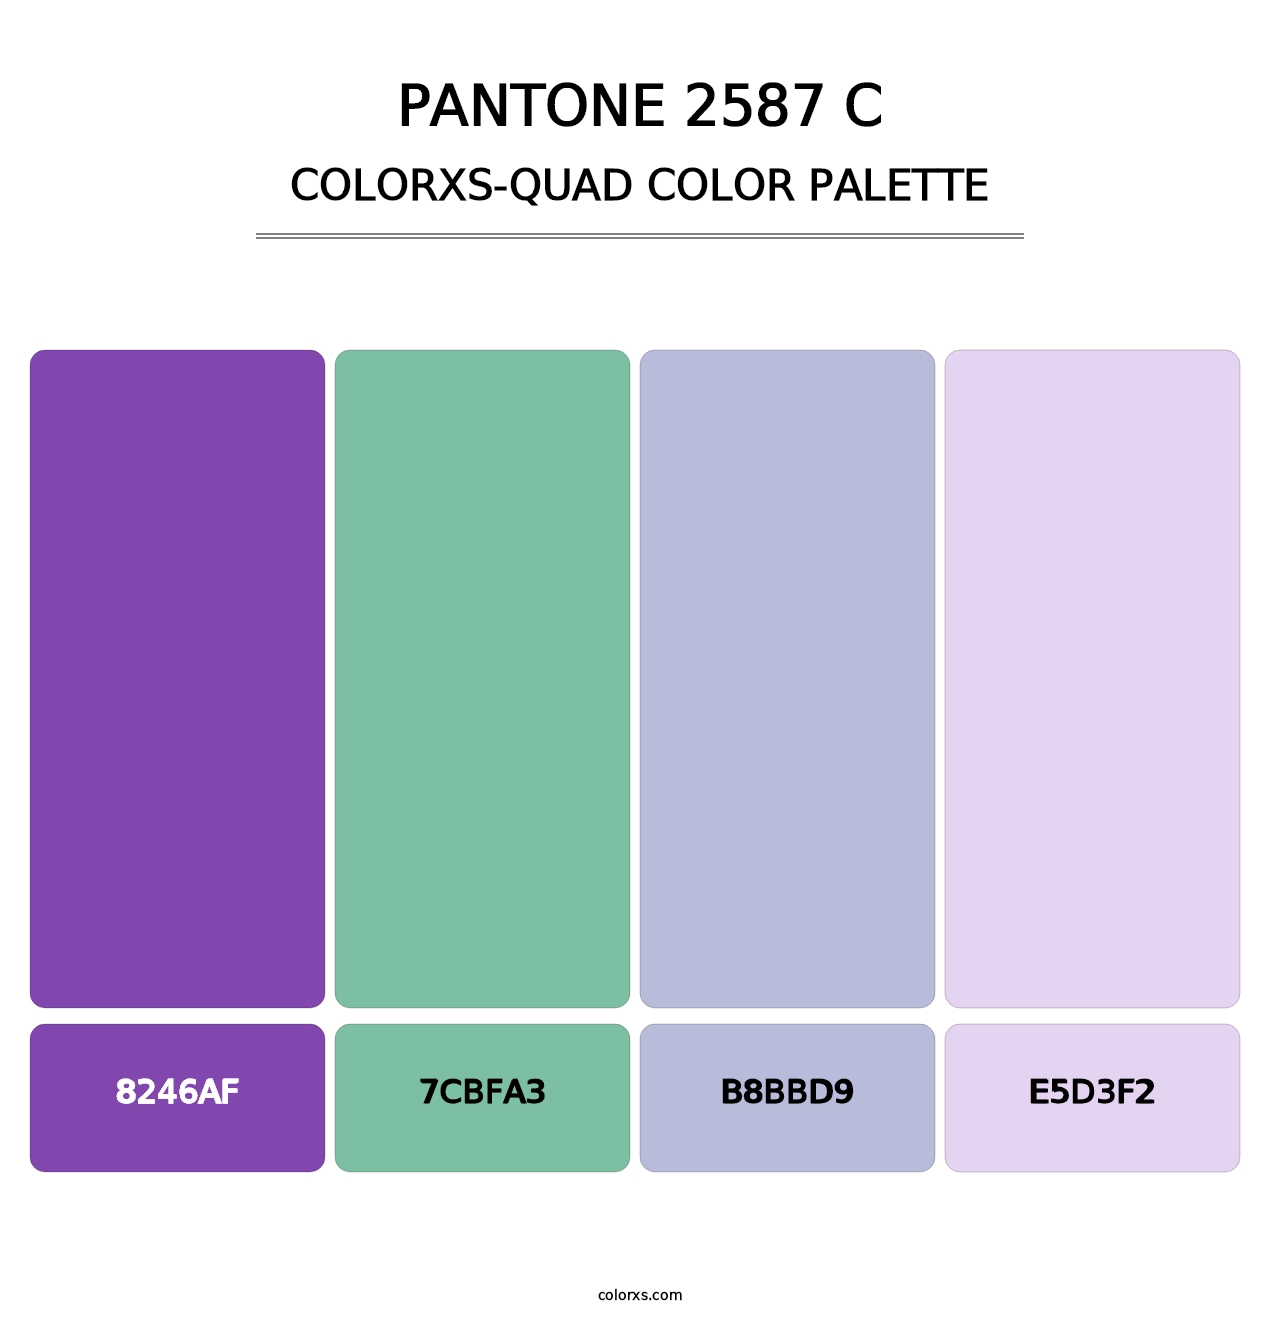 PANTONE 2587 C - Colorxs Quad Palette